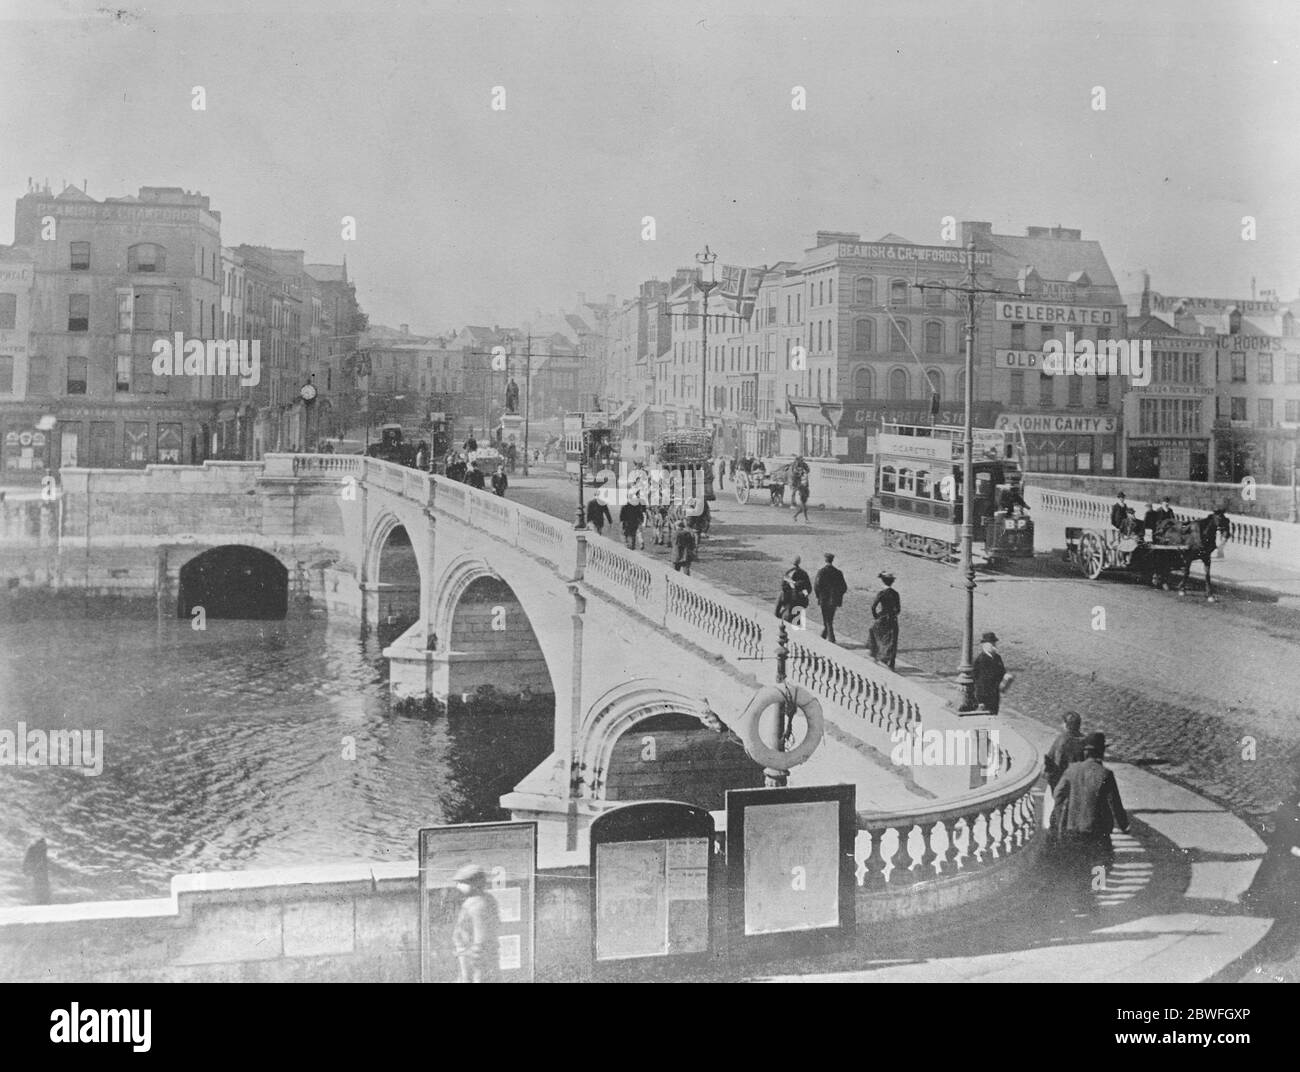 La ville brûlée de Cork pendant la guerre d'indépendance irlandaise. Après une embuscade de l'armée républicaine irlandaise dans une patrouille auxiliaire britannique dans la ville, les auxiliaires, les Noirs, les Tans et les soldats britanniques ont incendié un certain nombre de maisons, puis ont pillé et brûlé de nombreux bâtiments dans le centre-ville, ici le pont de Saint Patrick décembre 14 1920 Banque D'Images